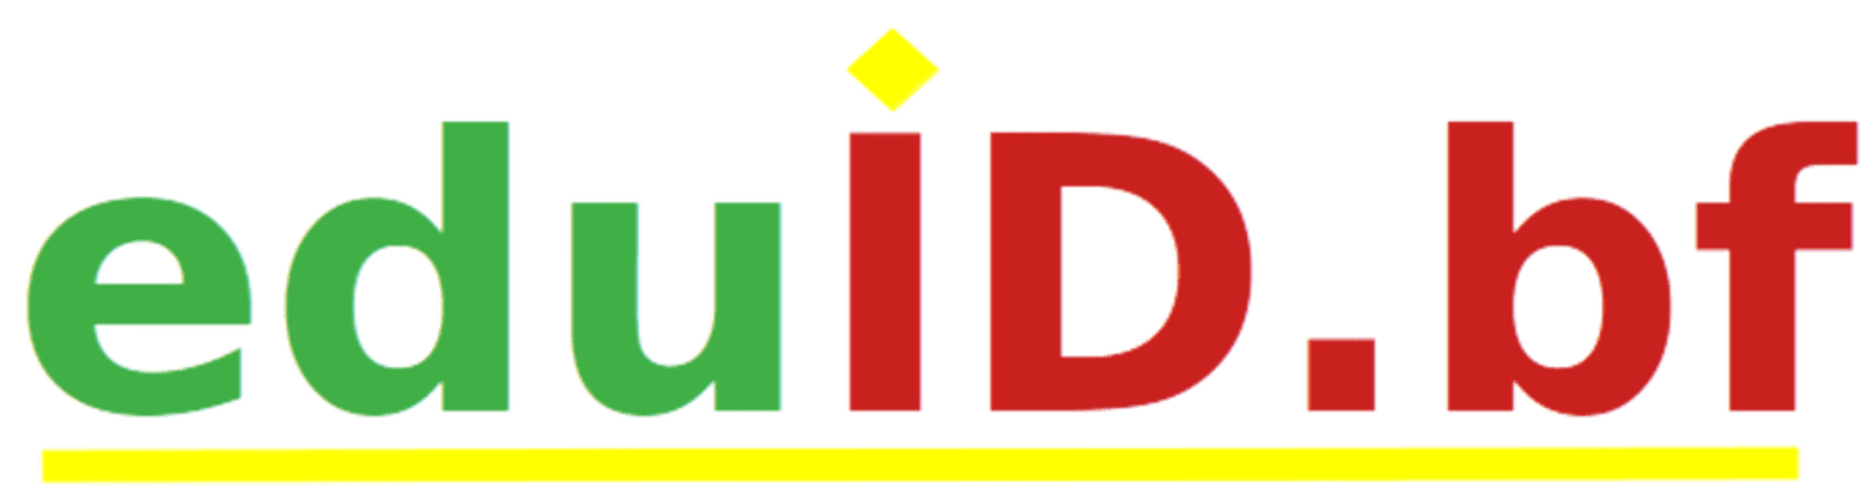 eduID.bf logo